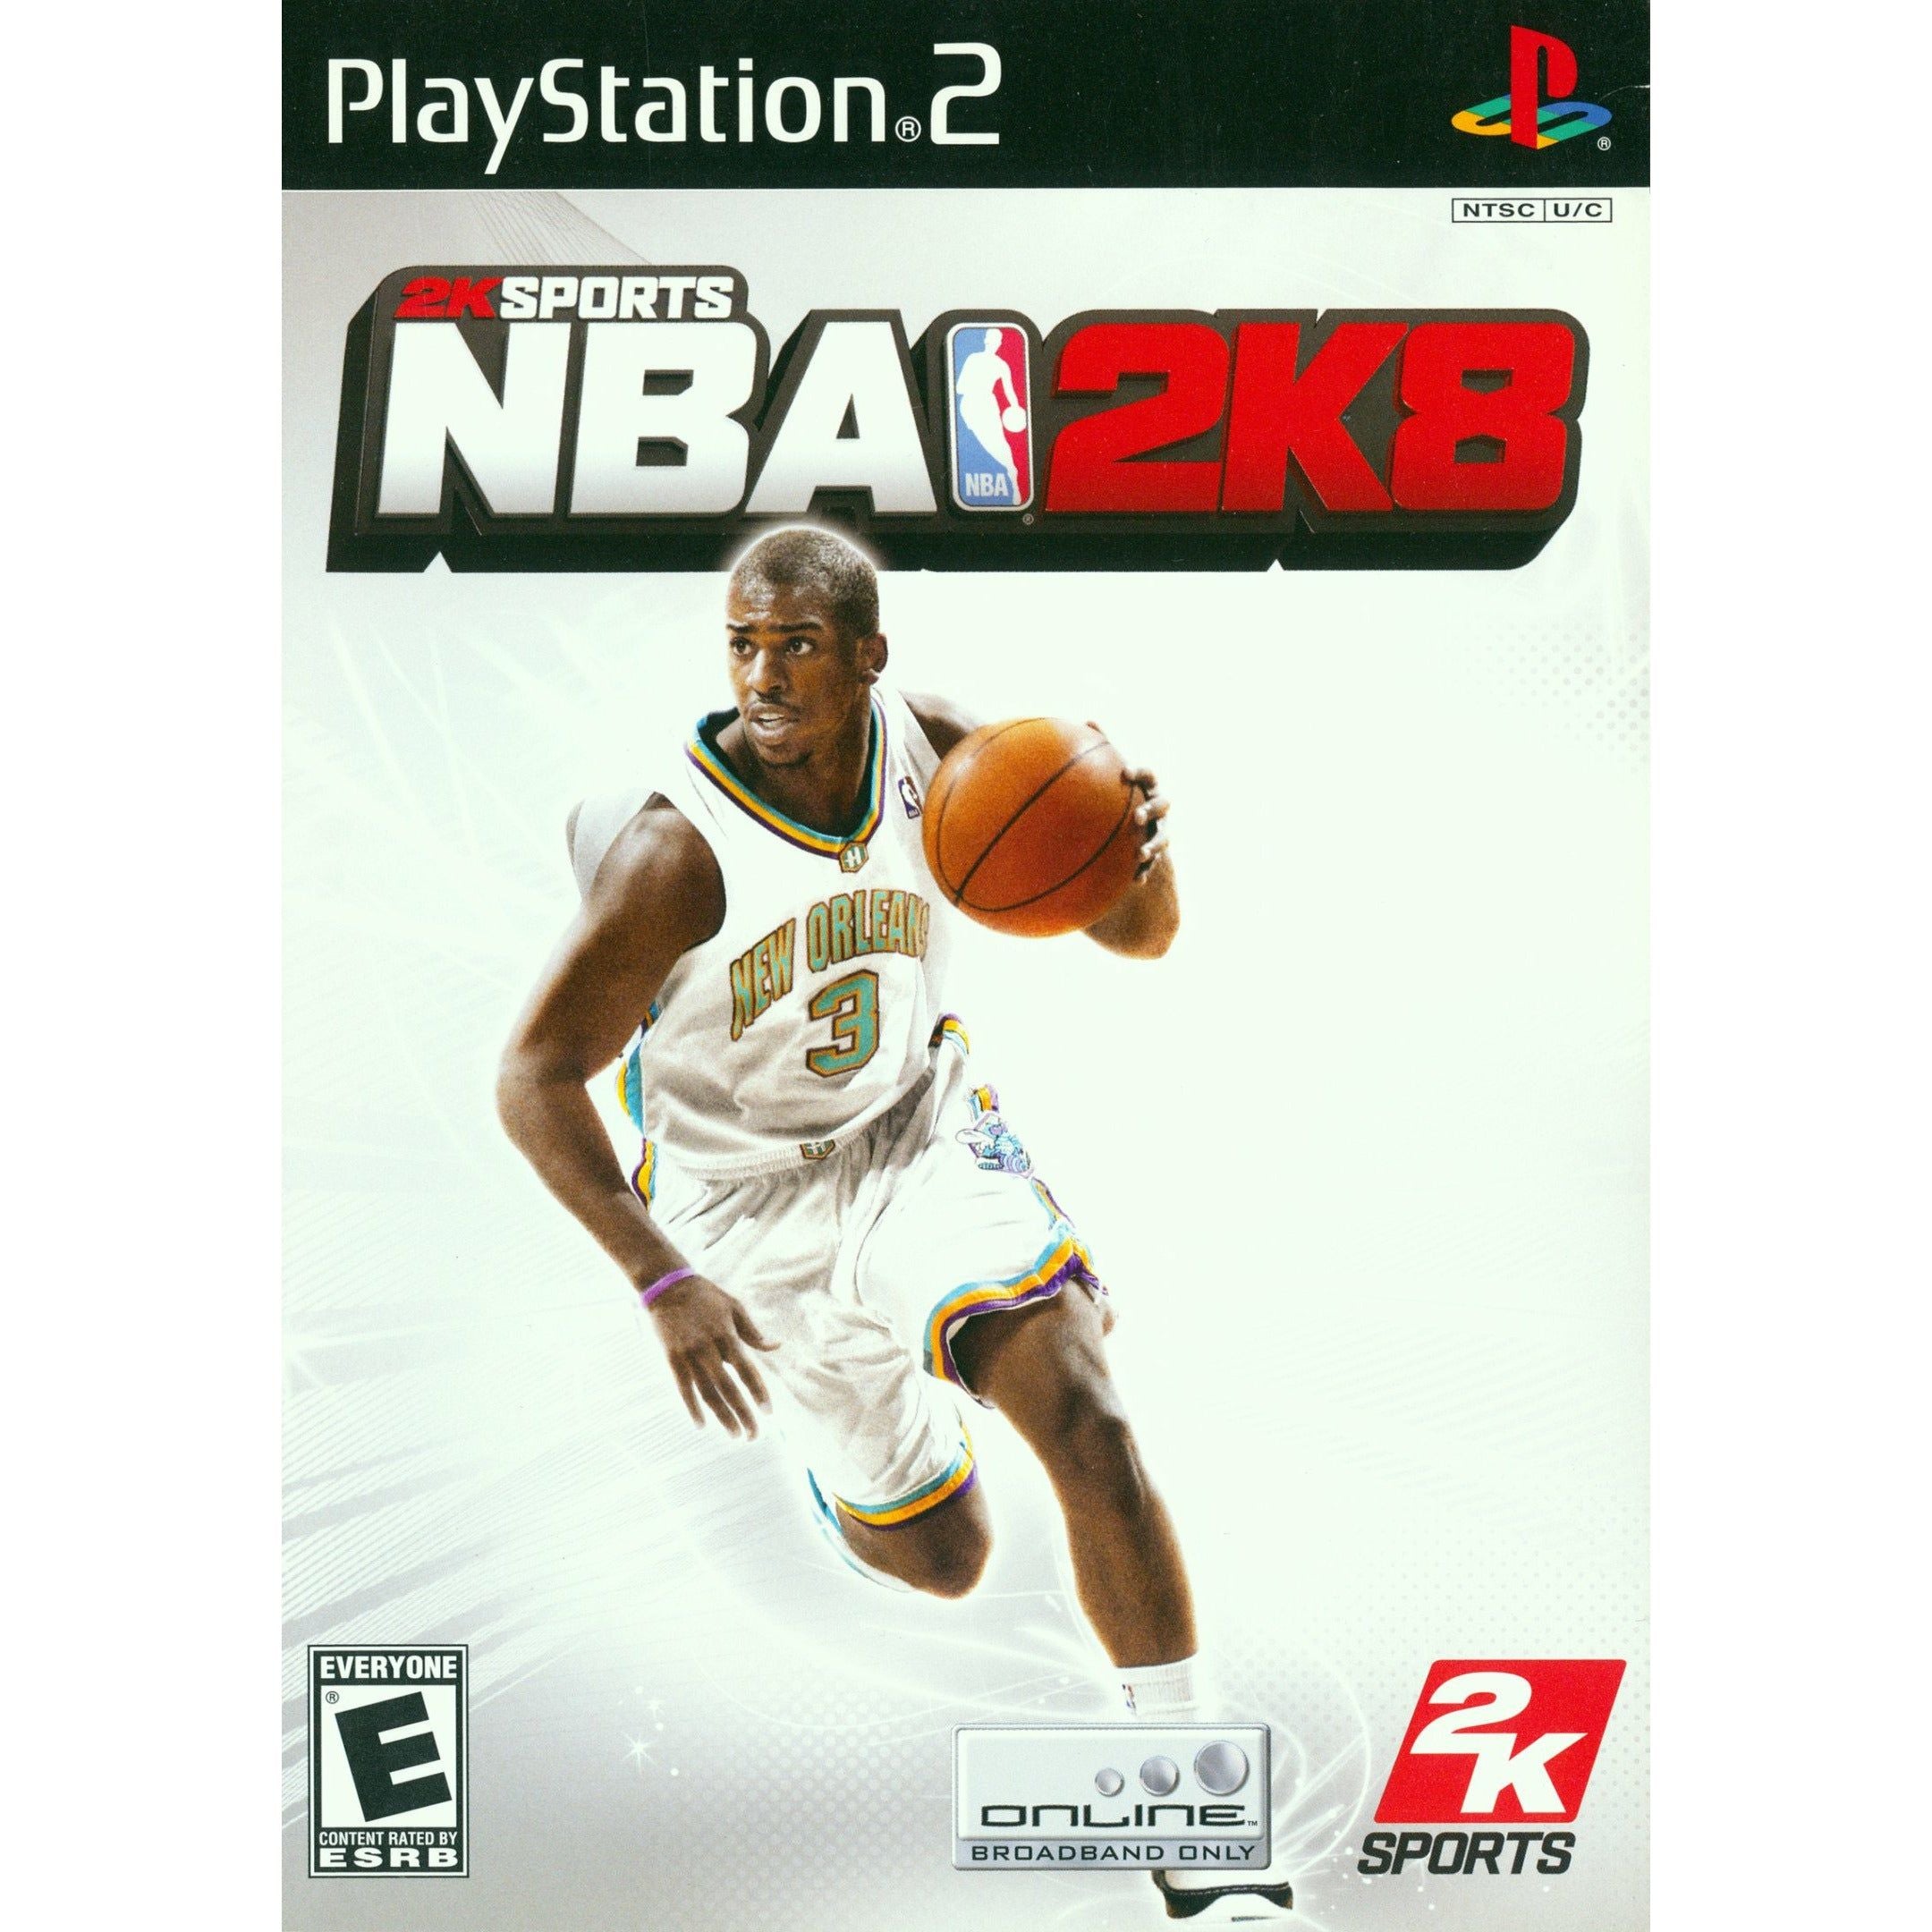 PS2 - NBA 2K8